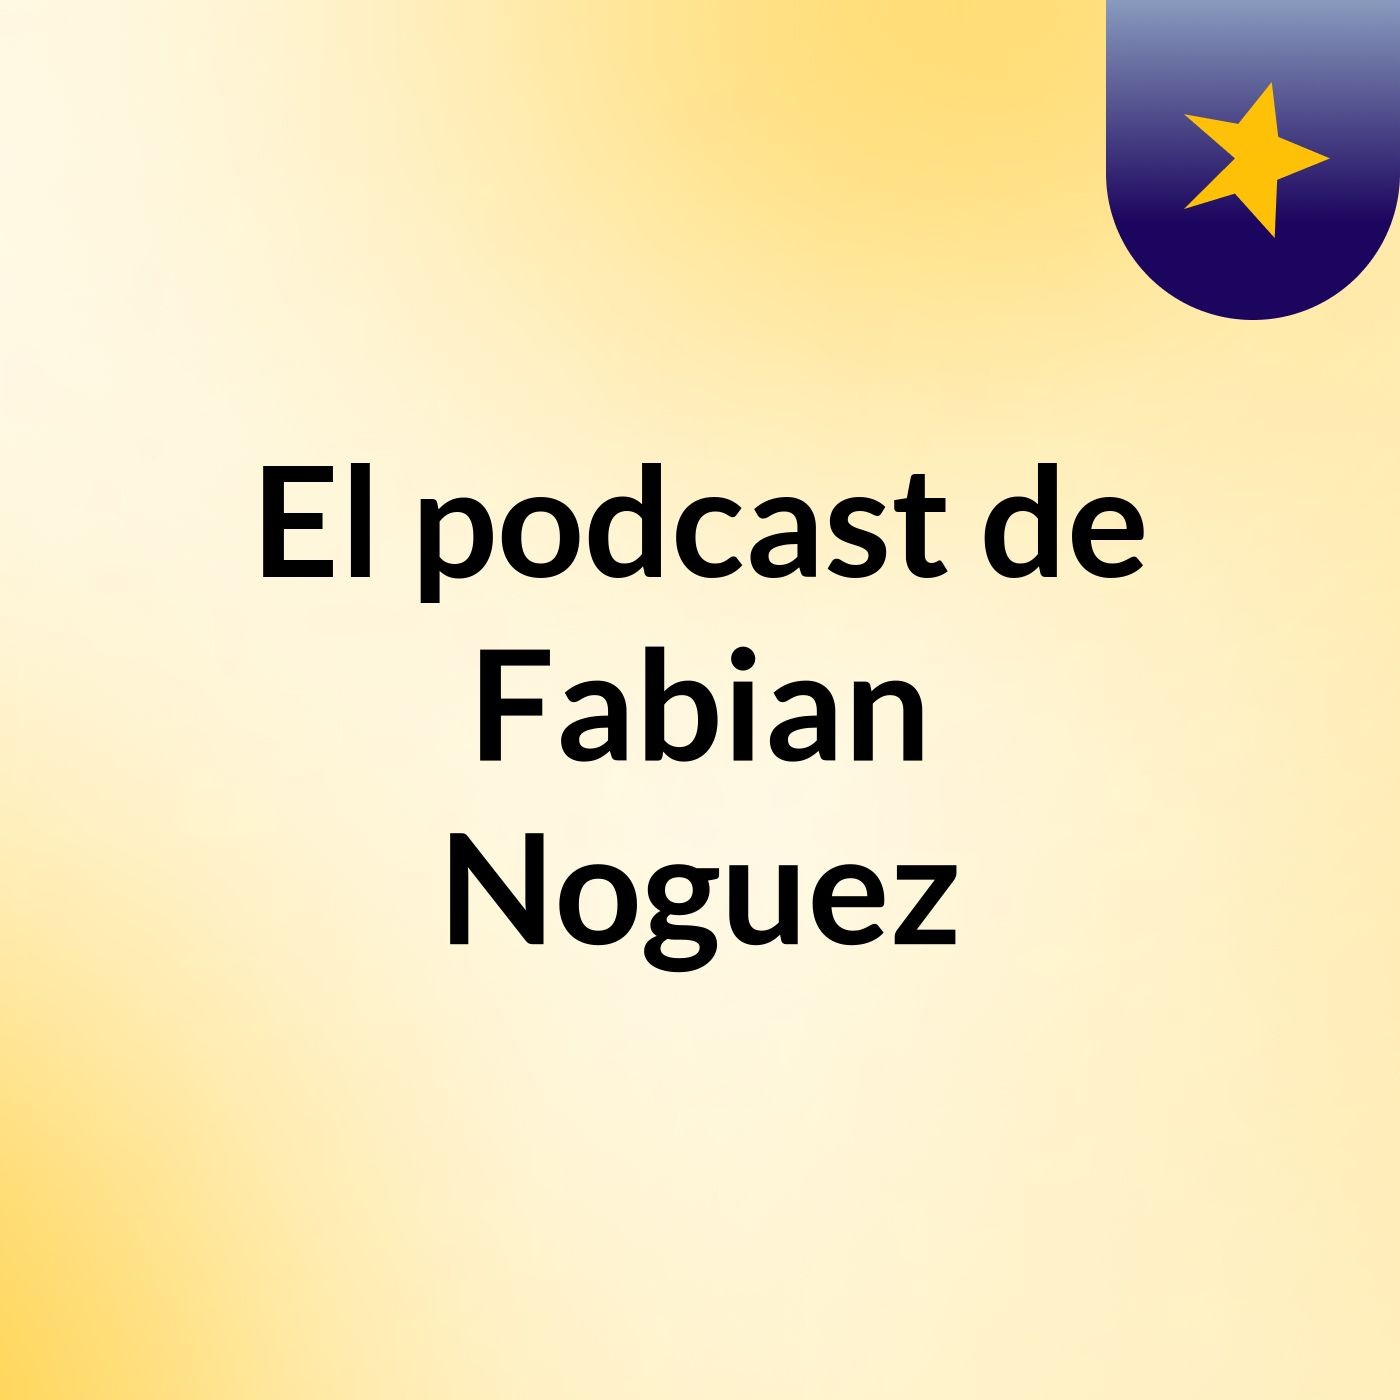 El podcast de Fabian Noguez